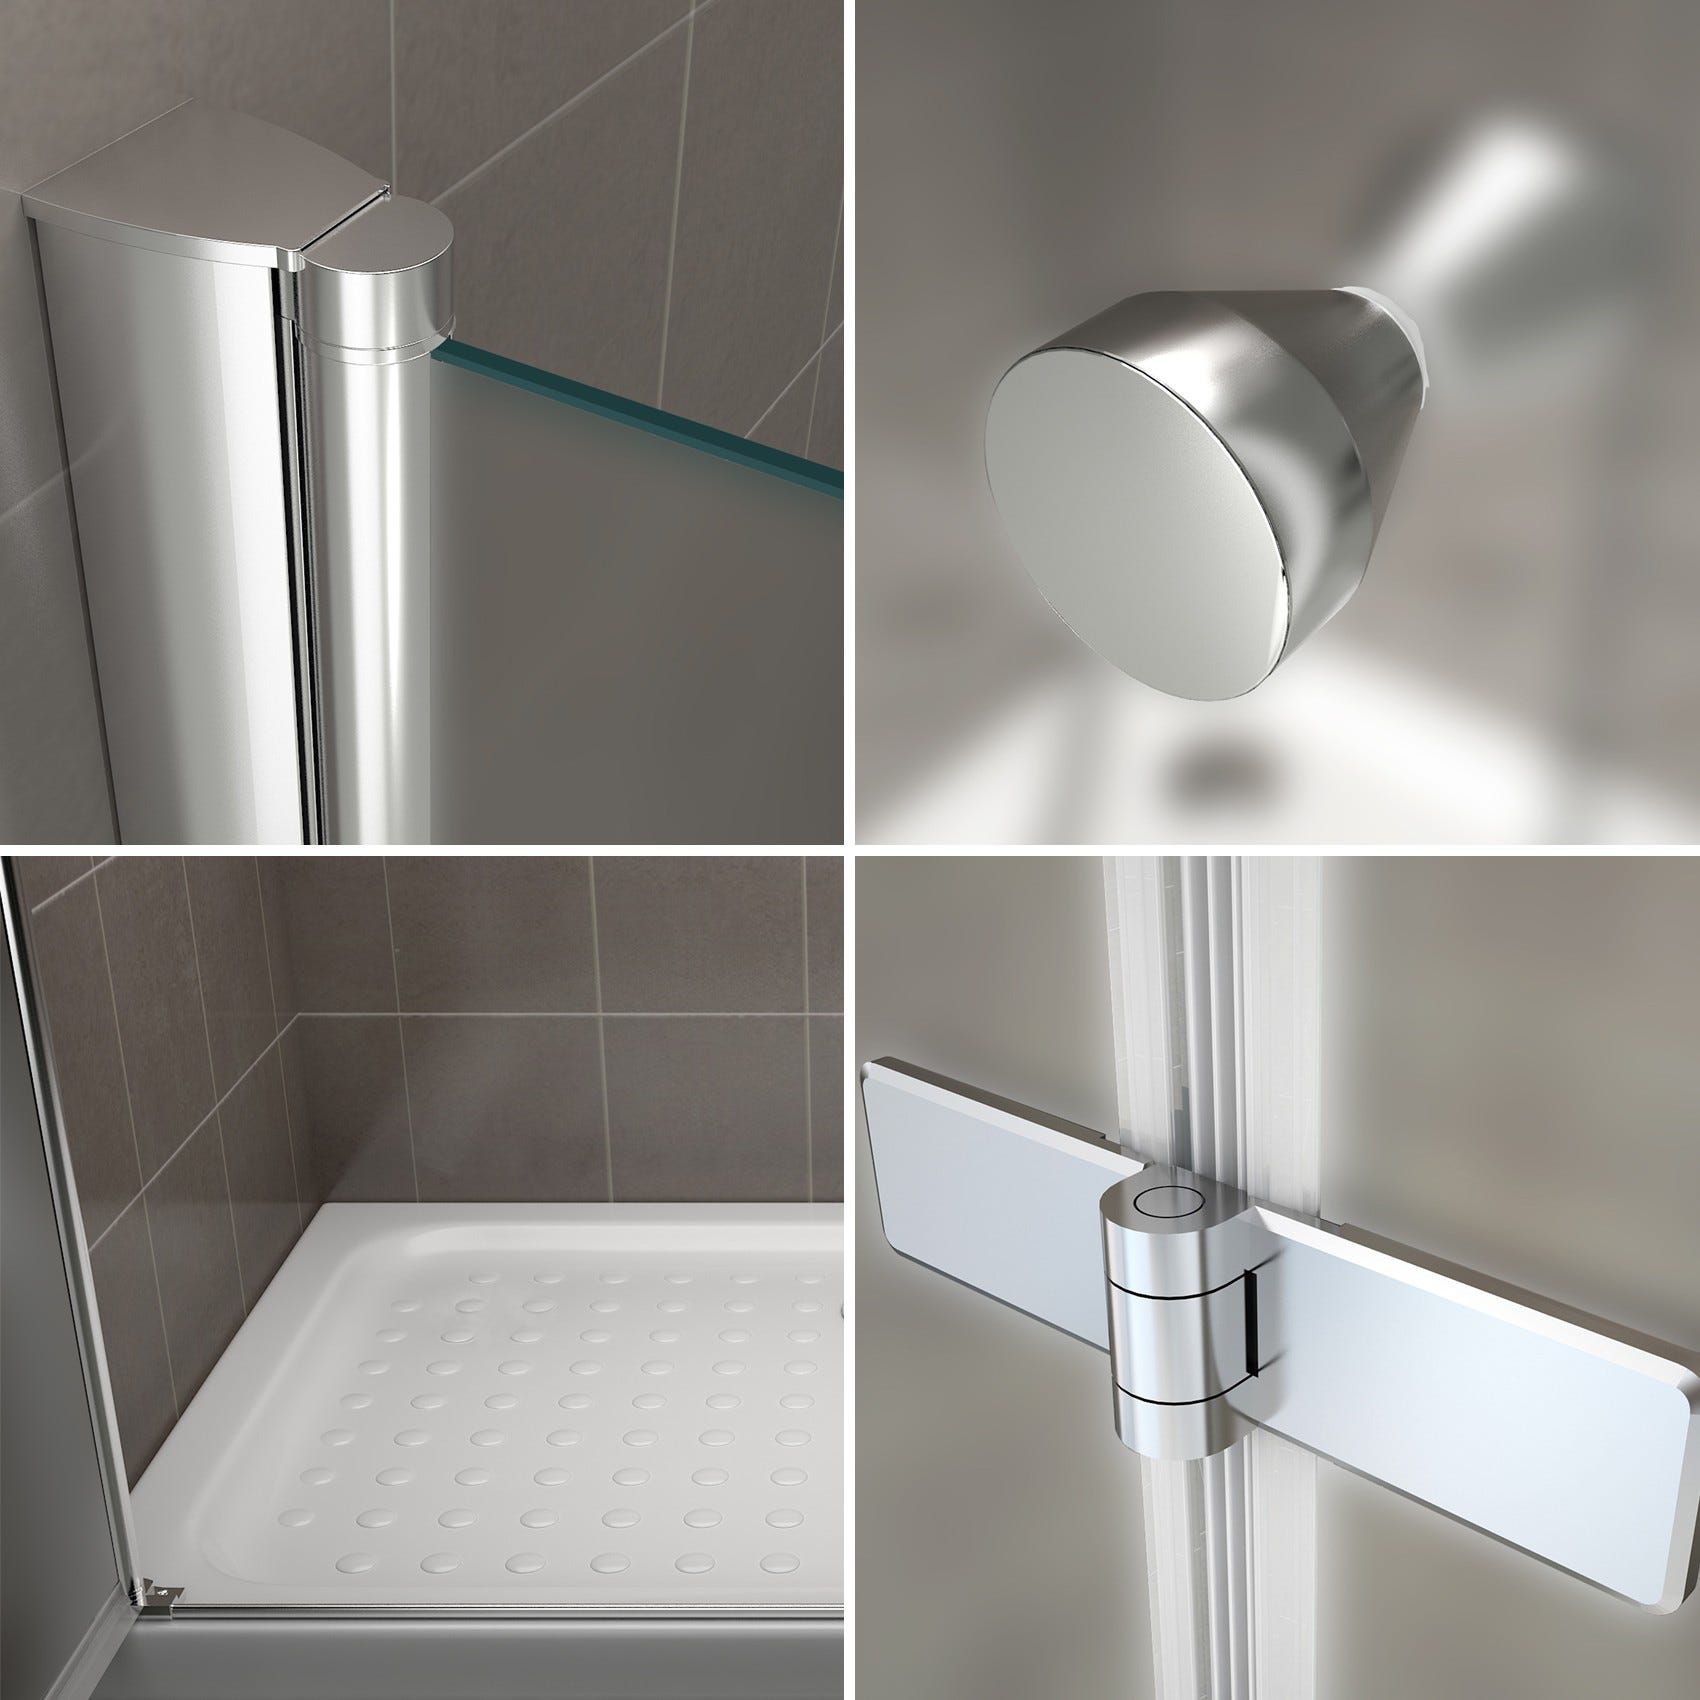 EMMY Porte de douche pliante pivotante H 185 cm largeur réglable 140 à 144 cm verre opaque 4